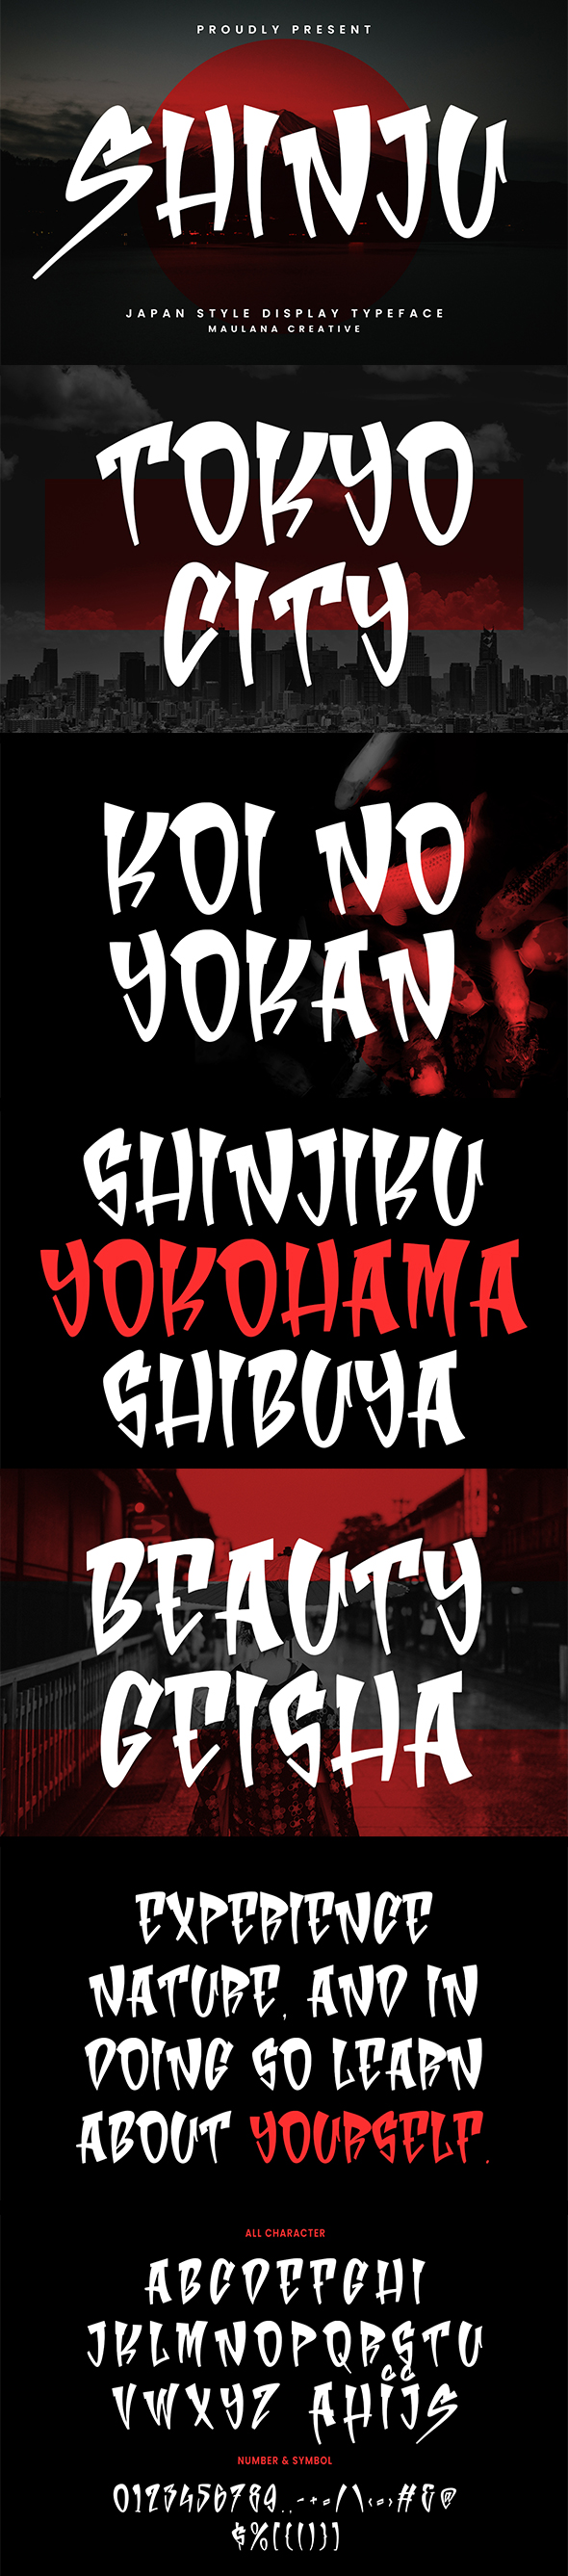 Shinju Display Japanese Handmade Font Typeface